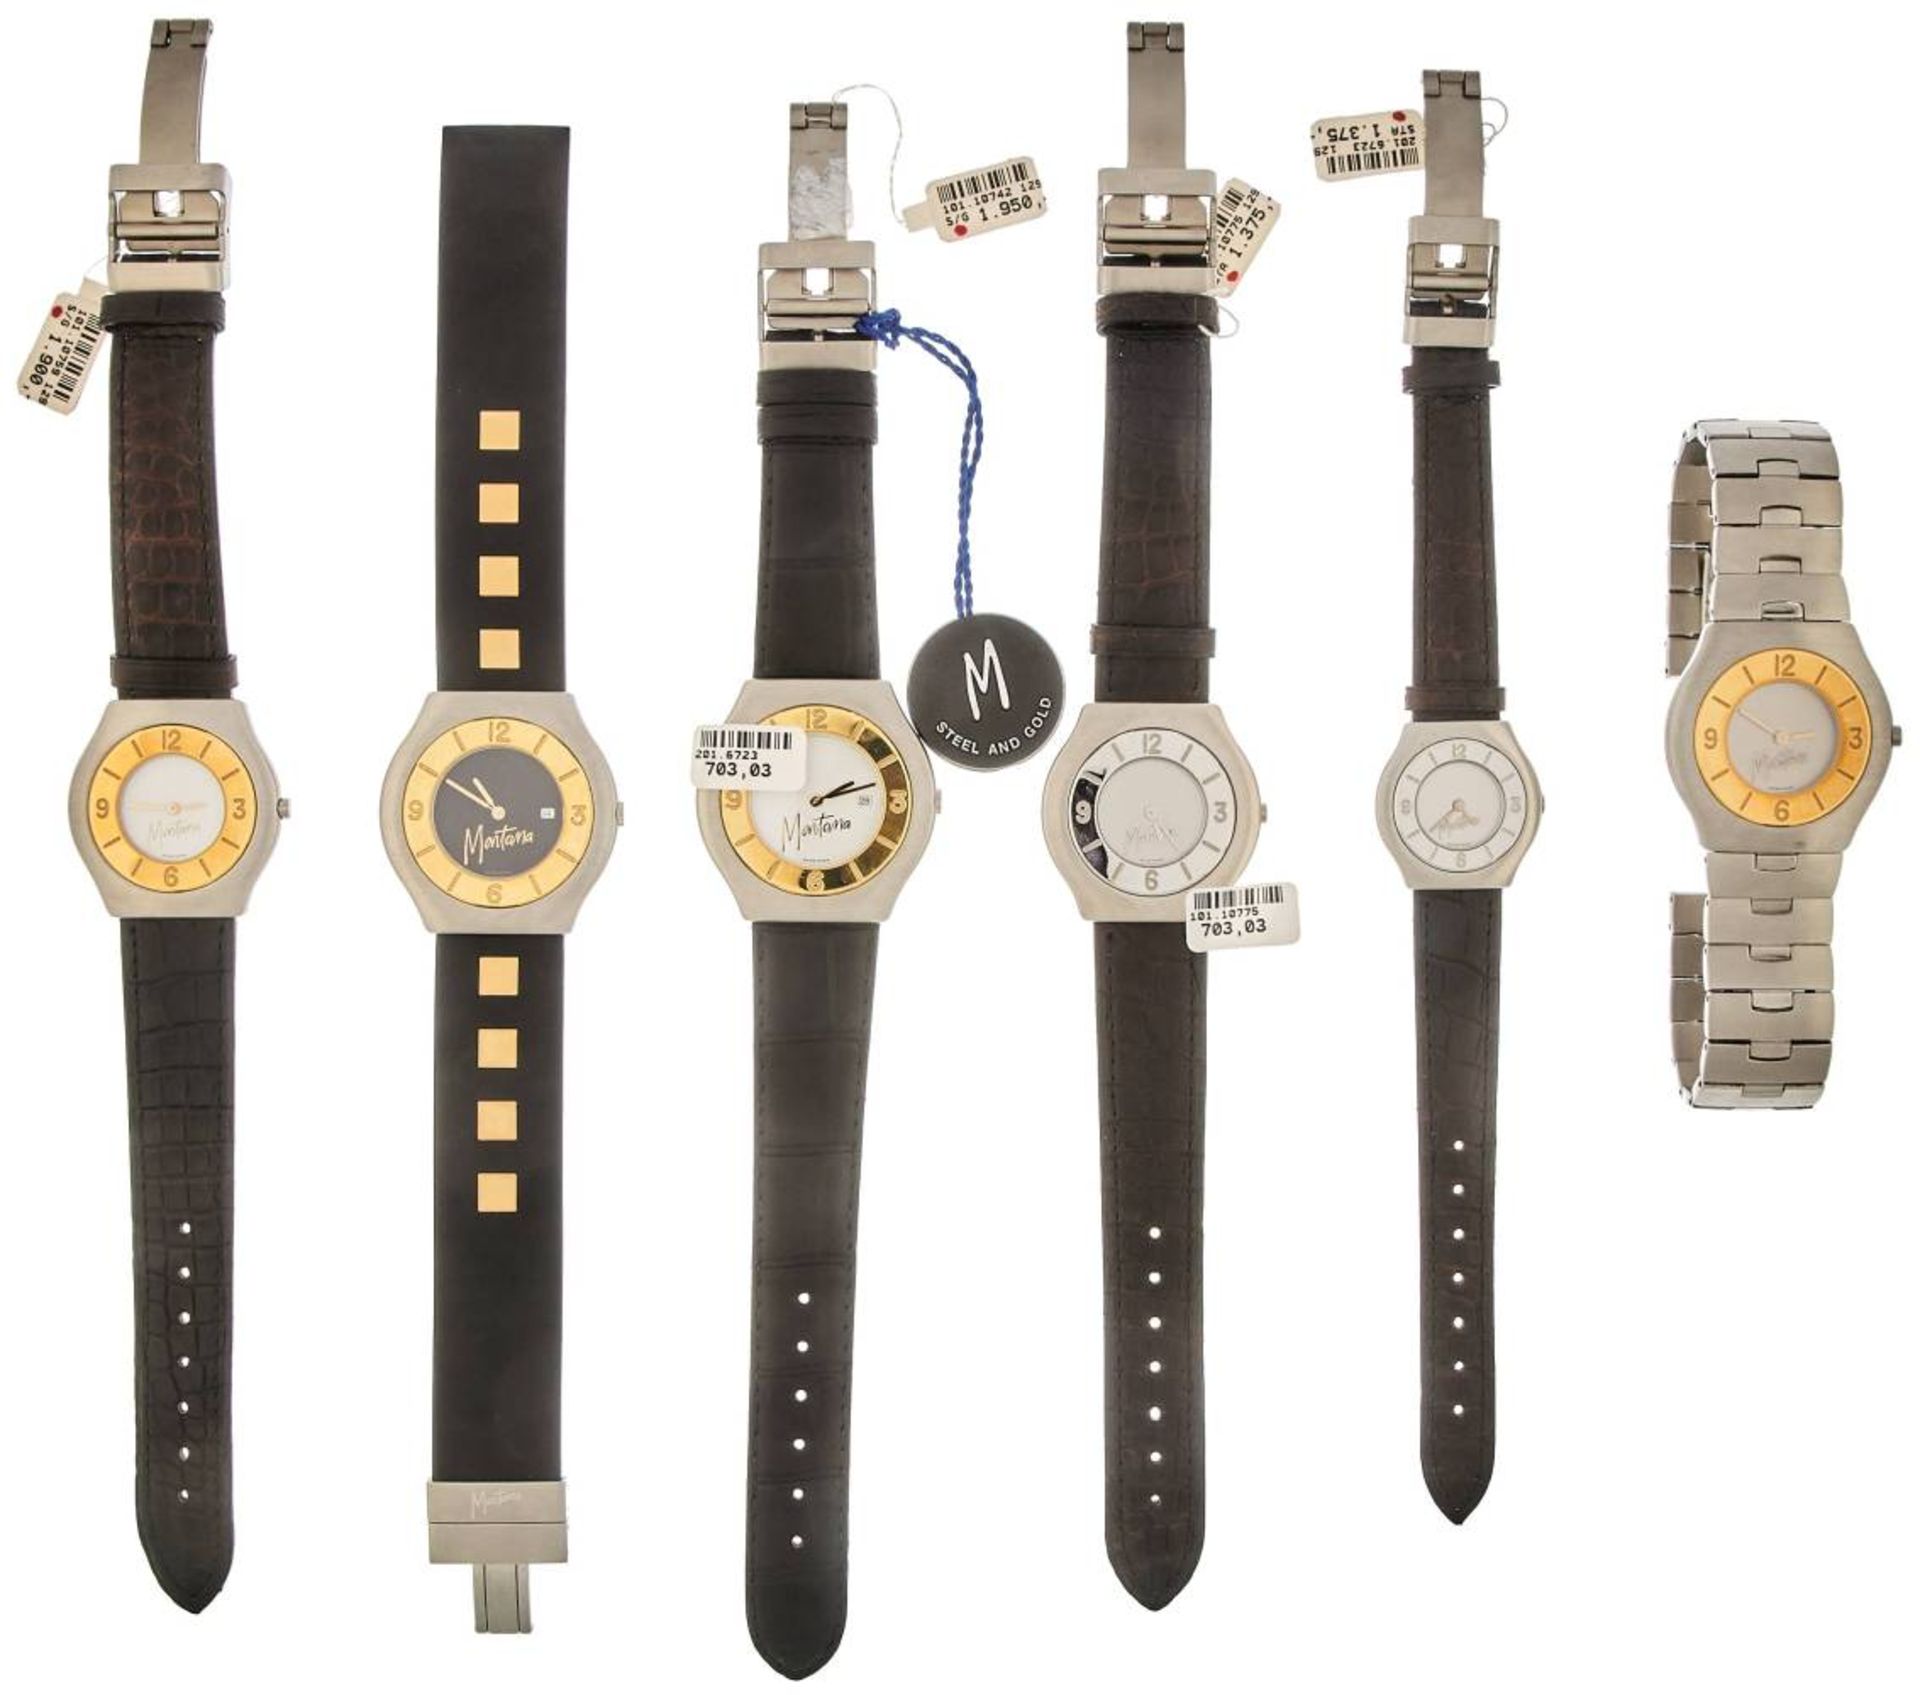 Montana Watch Company Herren/Damen Armbanduhren. Sammlung von 6 Montana Armbanduhren in Gold/ - Image 2 of 2